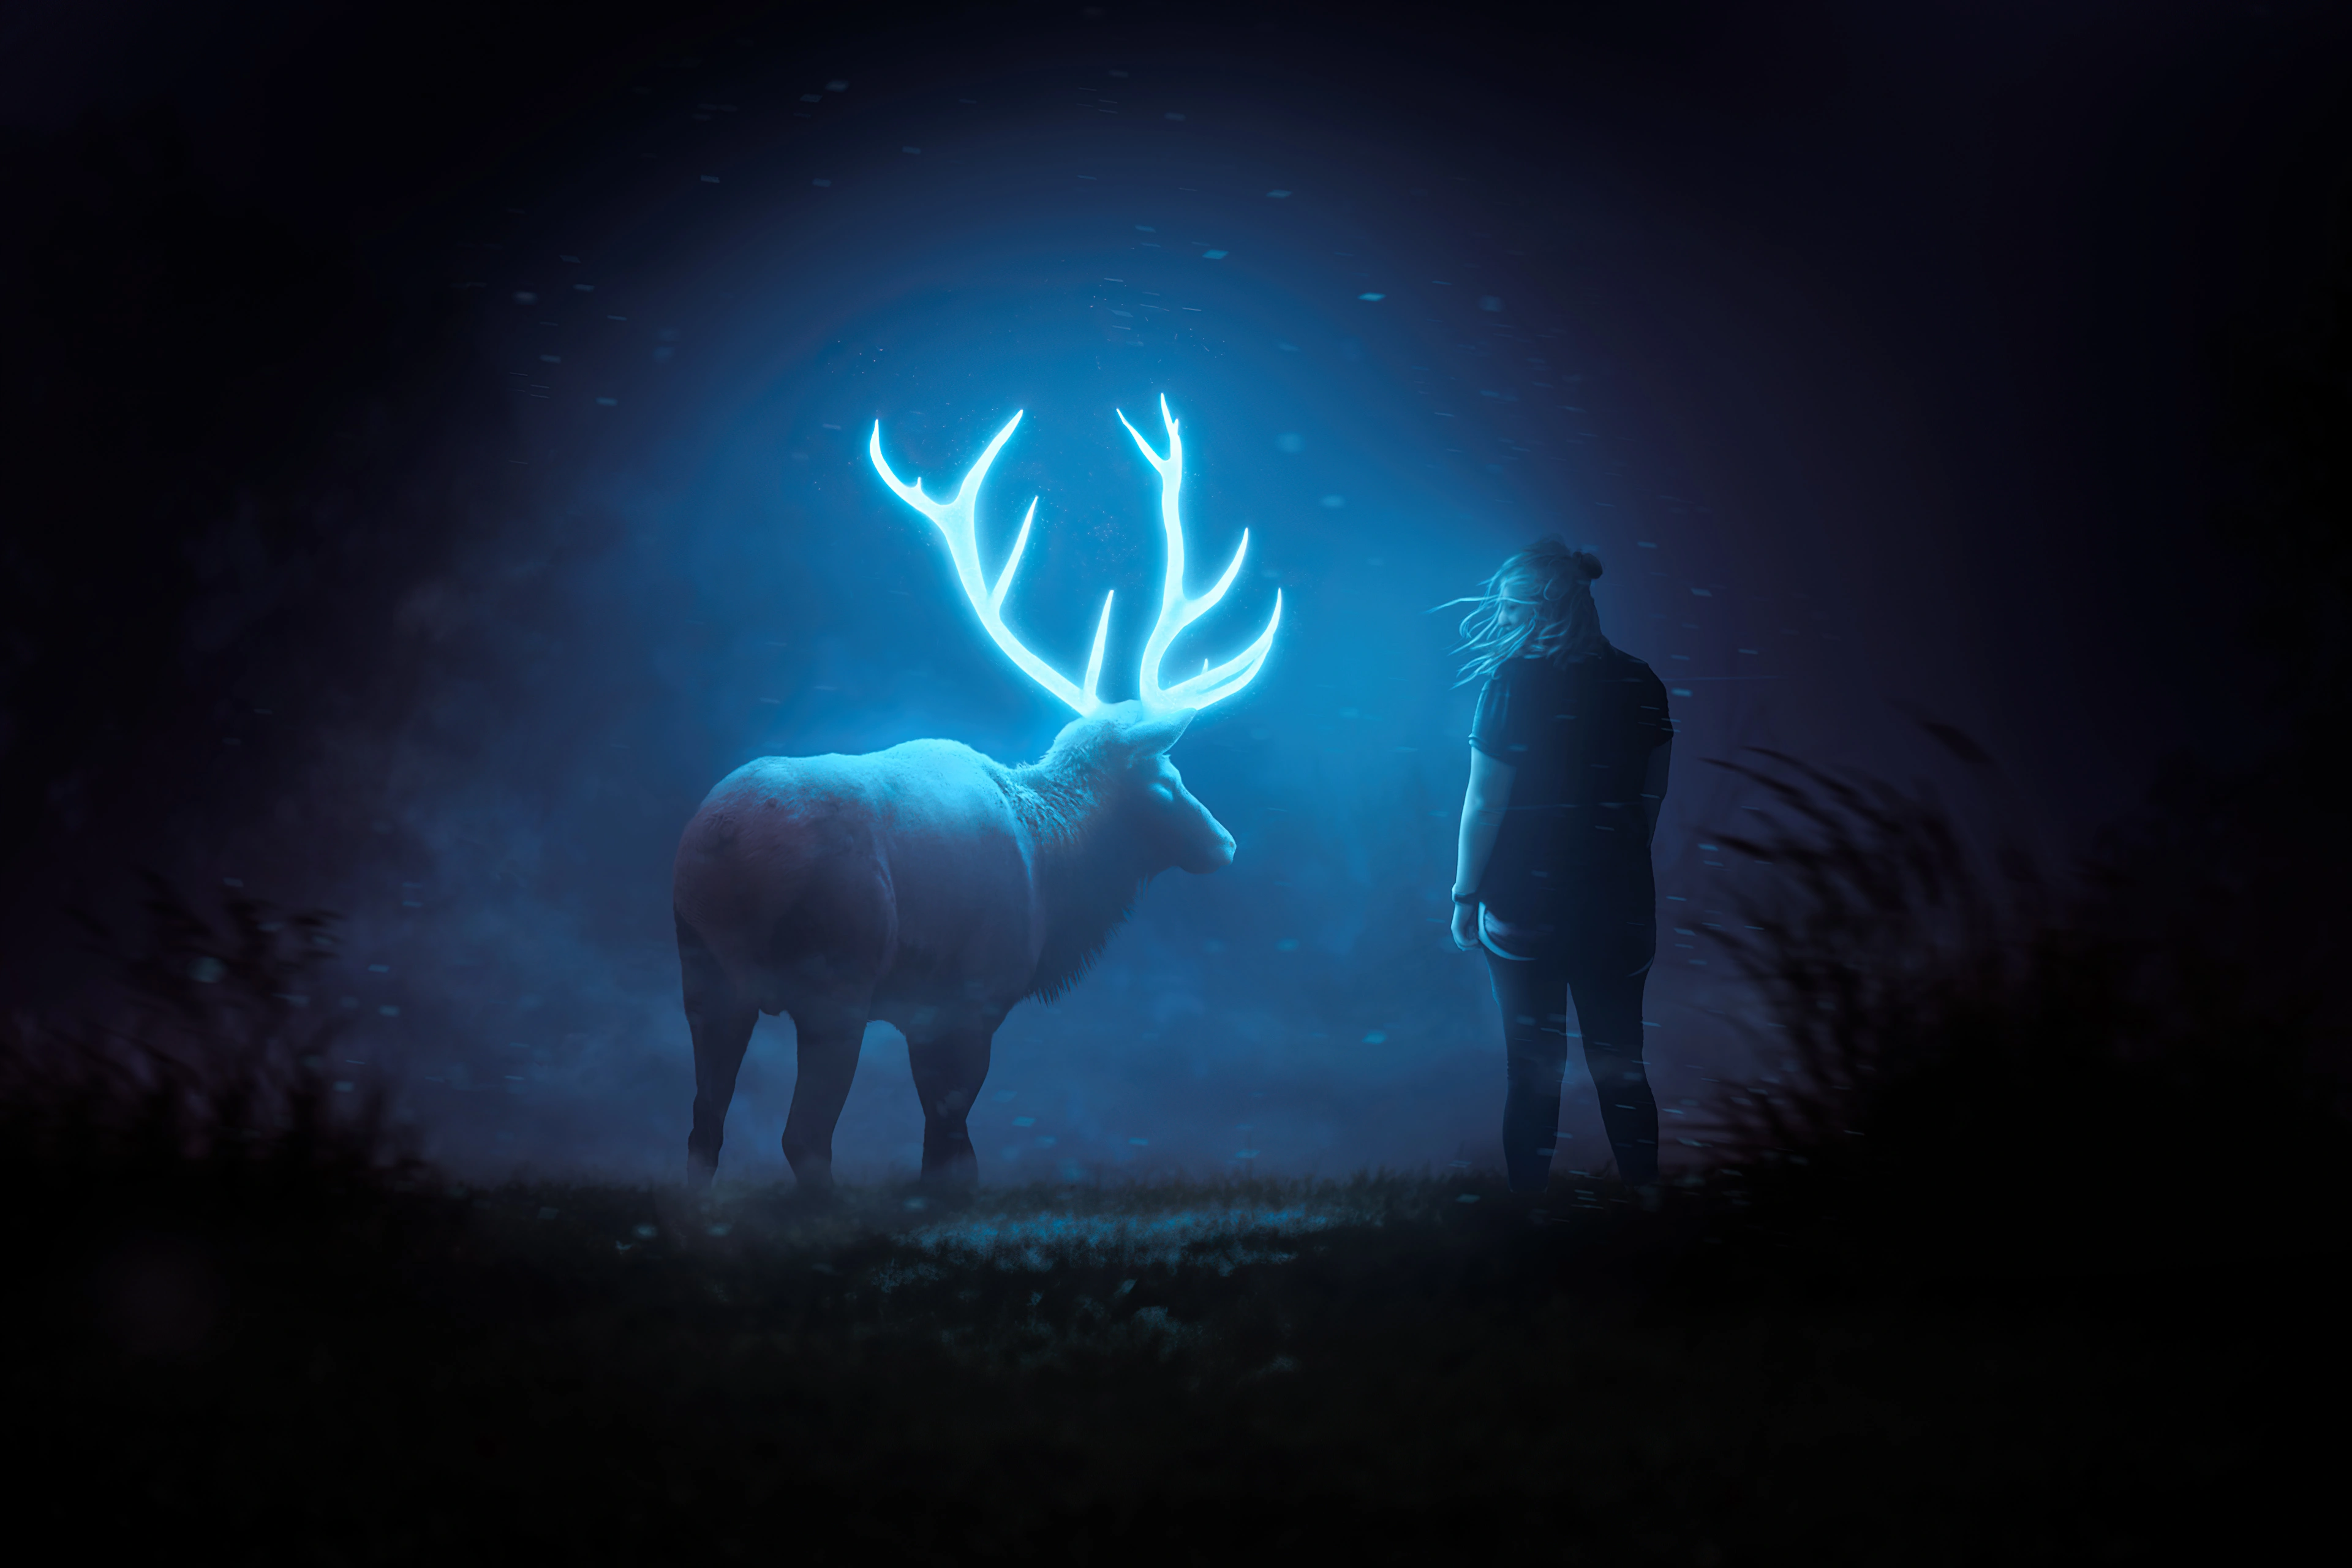 glowing reindeer in dark ap.jpg